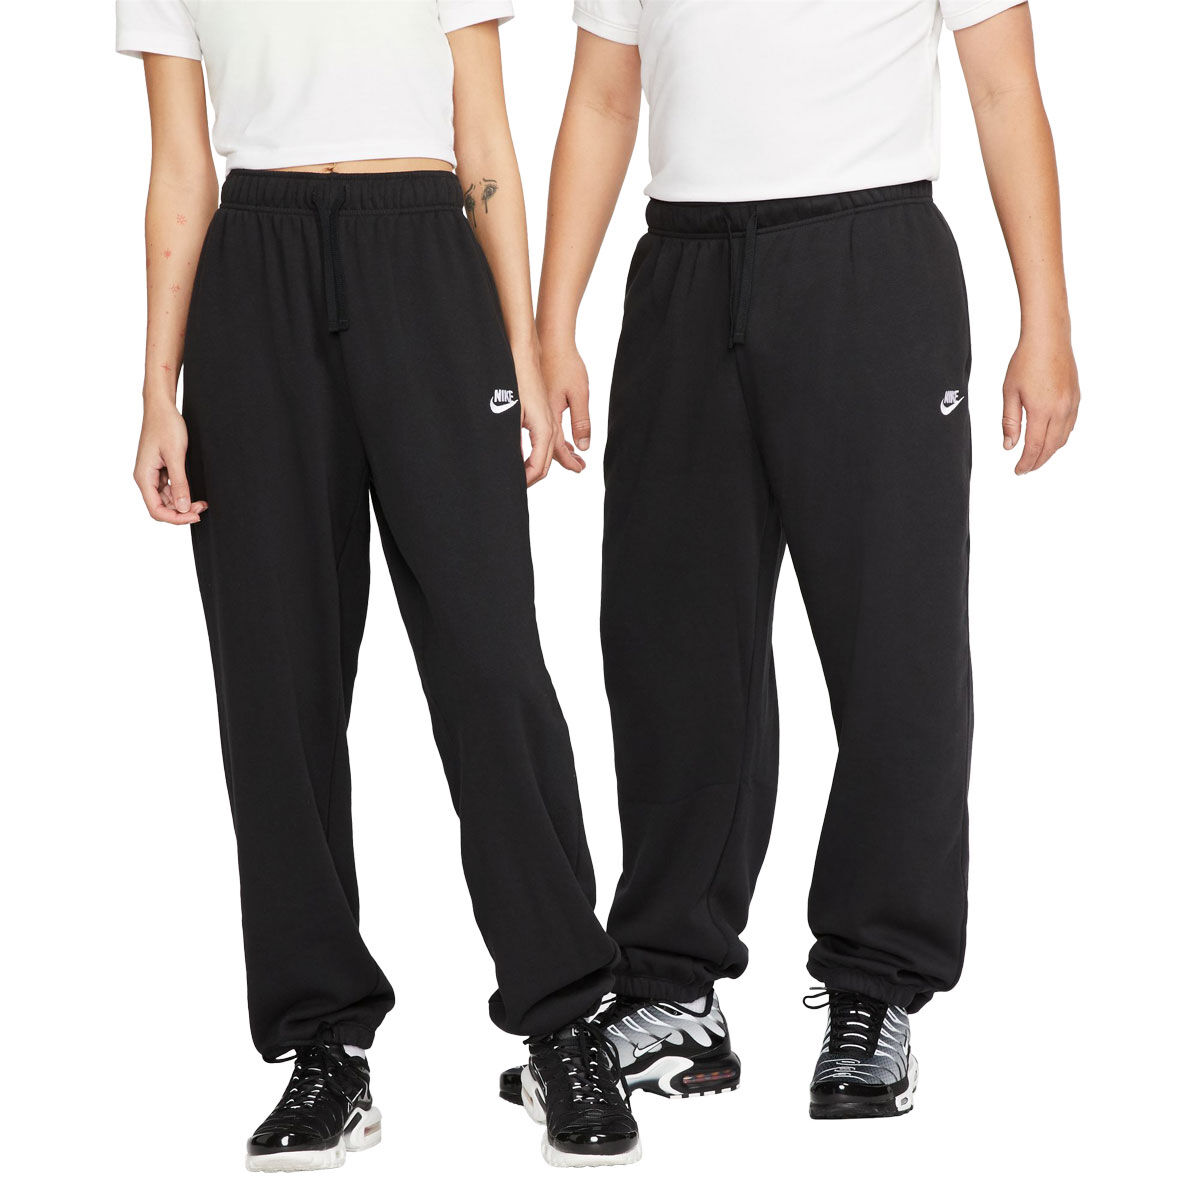 Cotton Blend Track Pants - Black - Ladies | H&M AU